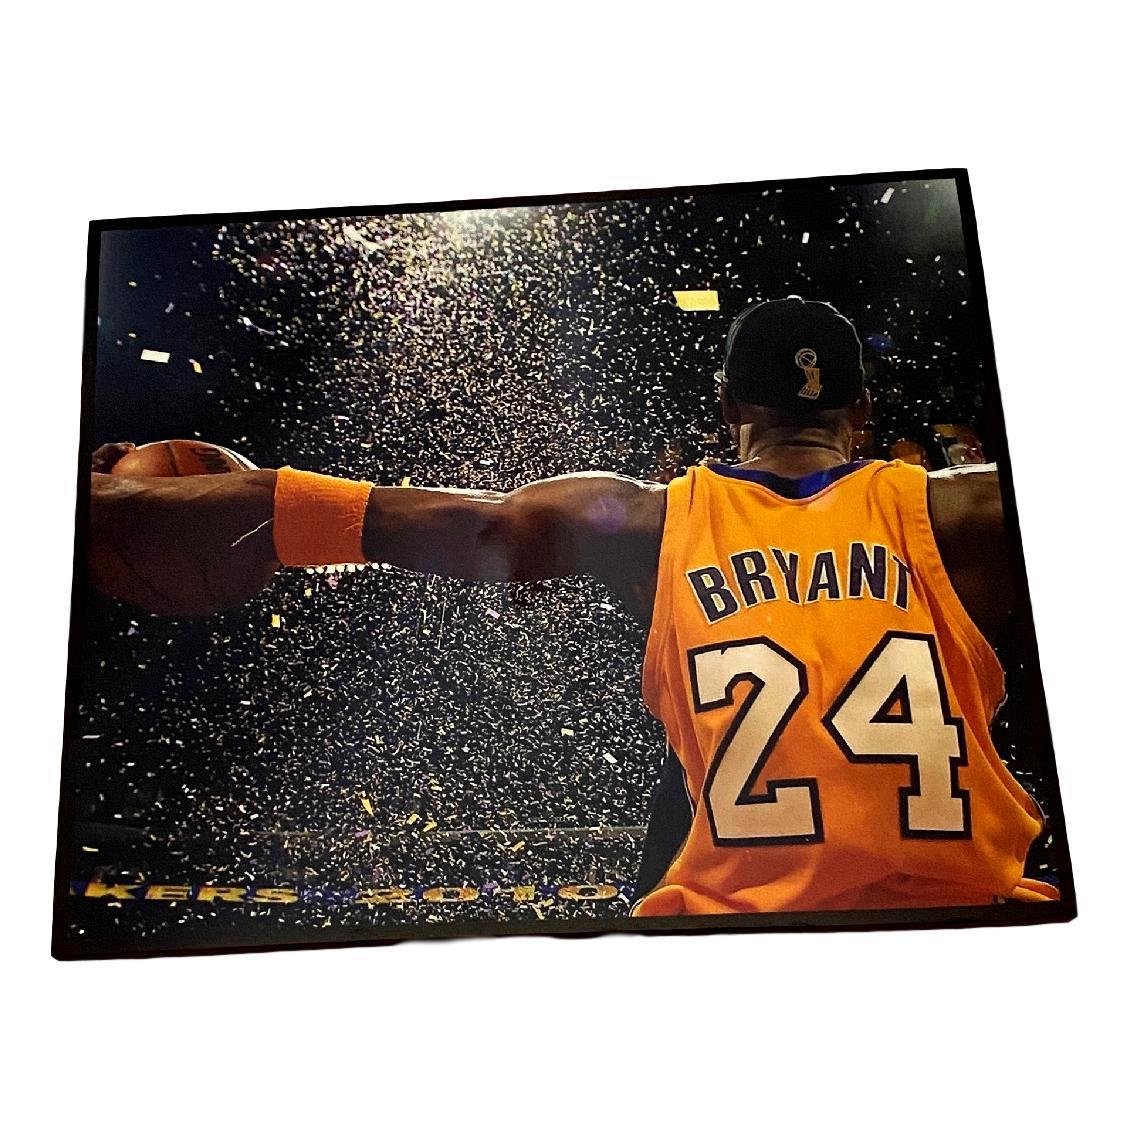 ポップ ビンテージ クール なデザインあります 送料無料 コービー ブライアント Kobe Bean Bryant バスケ アートパネル 壁掛け 据え置き 壁掛けフック付き アーティスト Popパネル インテリア アートフレーム ポスター Cool 面白い かっこいい アート 雑貨 カフェ